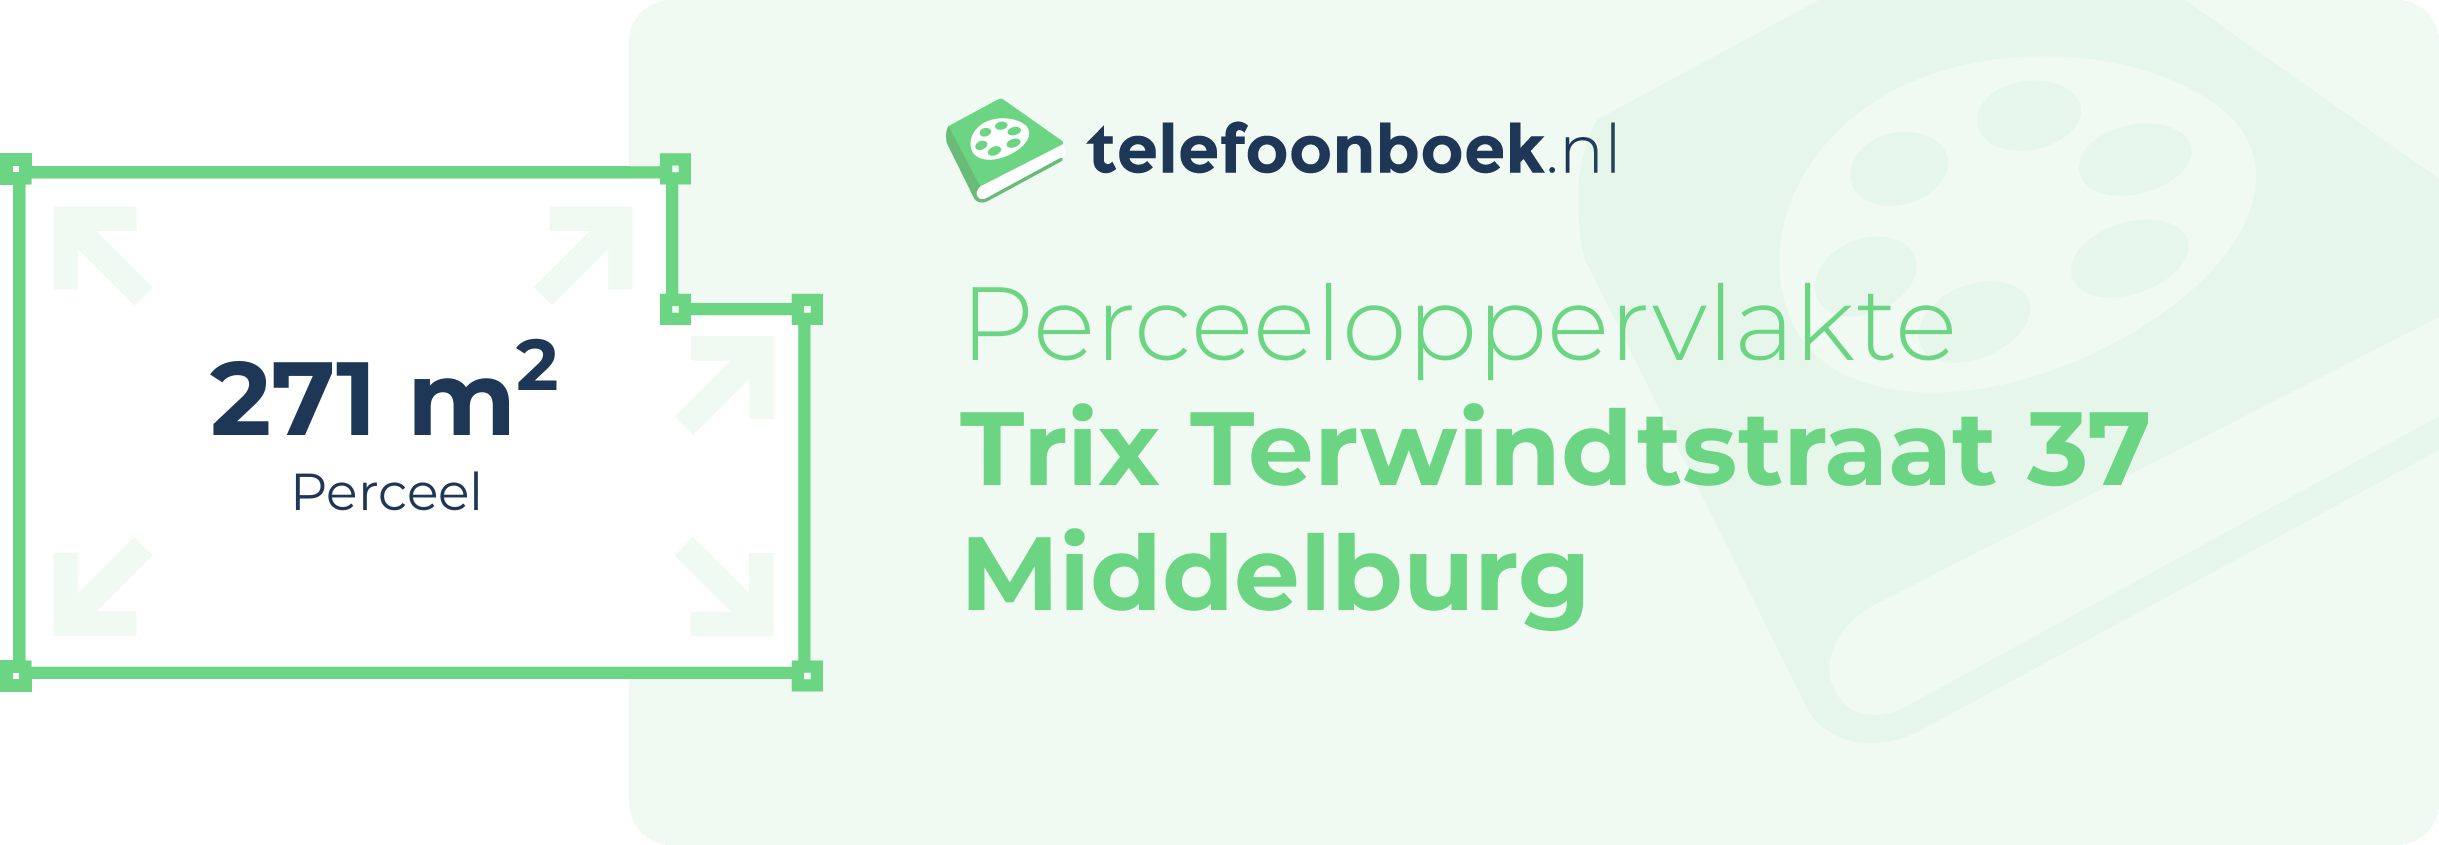 Perceeloppervlakte Trix Terwindtstraat 37 Middelburg